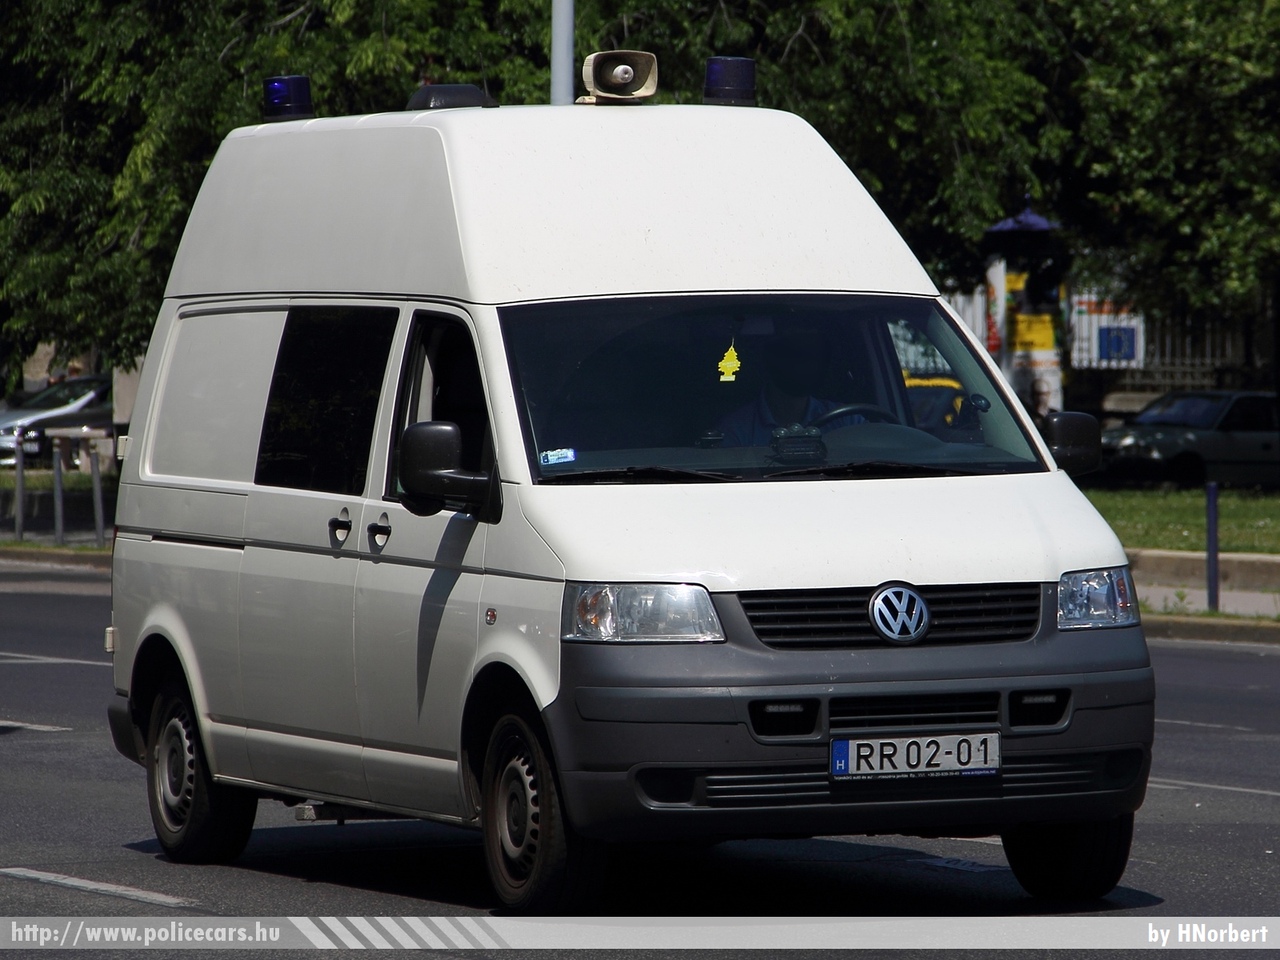 Volkswagen Transporter T5, Országos Büntetés-végrehajtási Intézet, fotó: HNorbert
Keywords: BV RR02-01 BV magyar Magyarország Hungary hungarian prison  Büntetés-végrehajtás